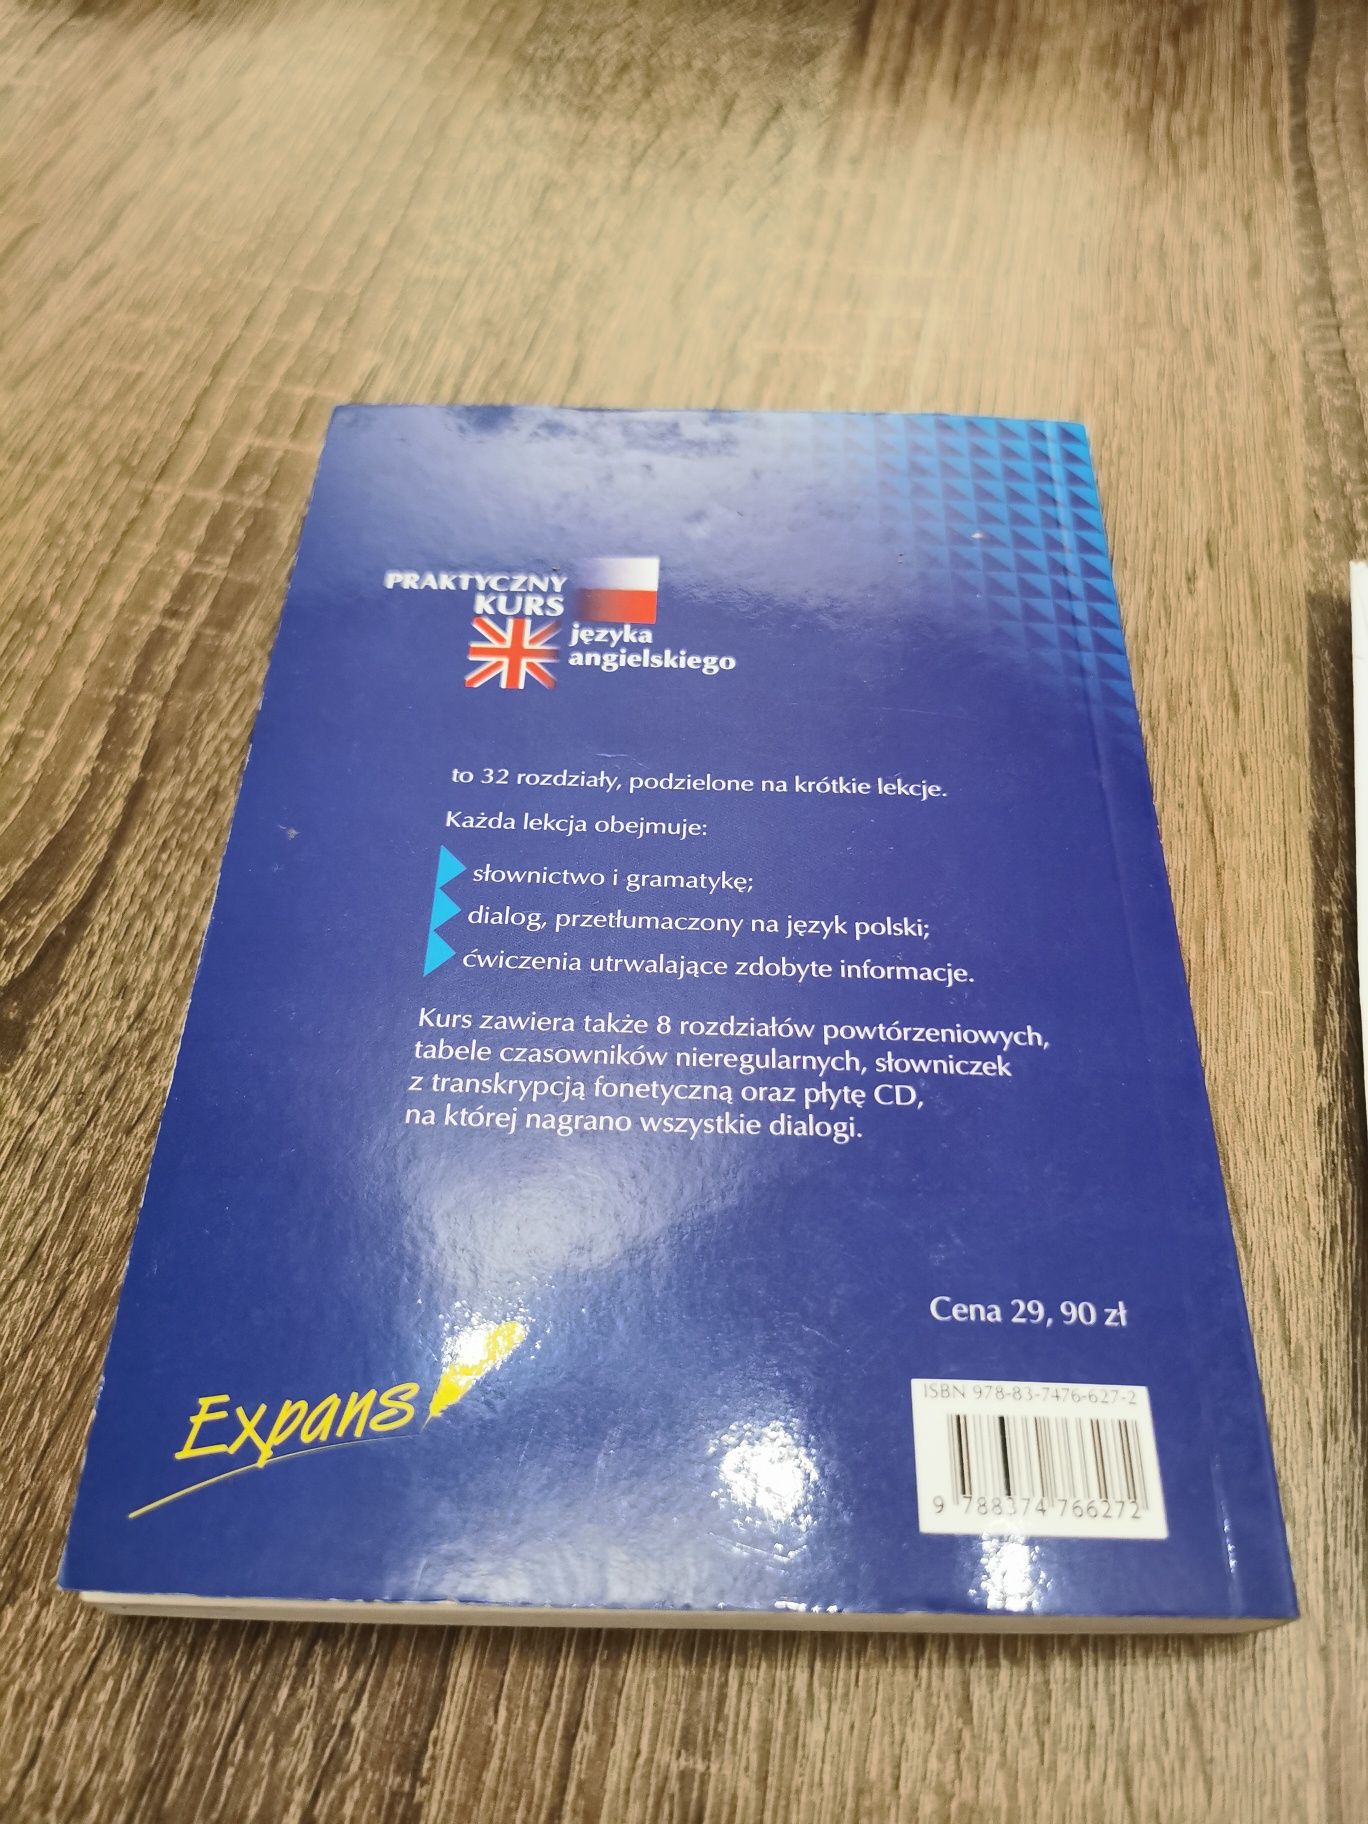 Praktyczny kurs języka angielskiego z płytą CD